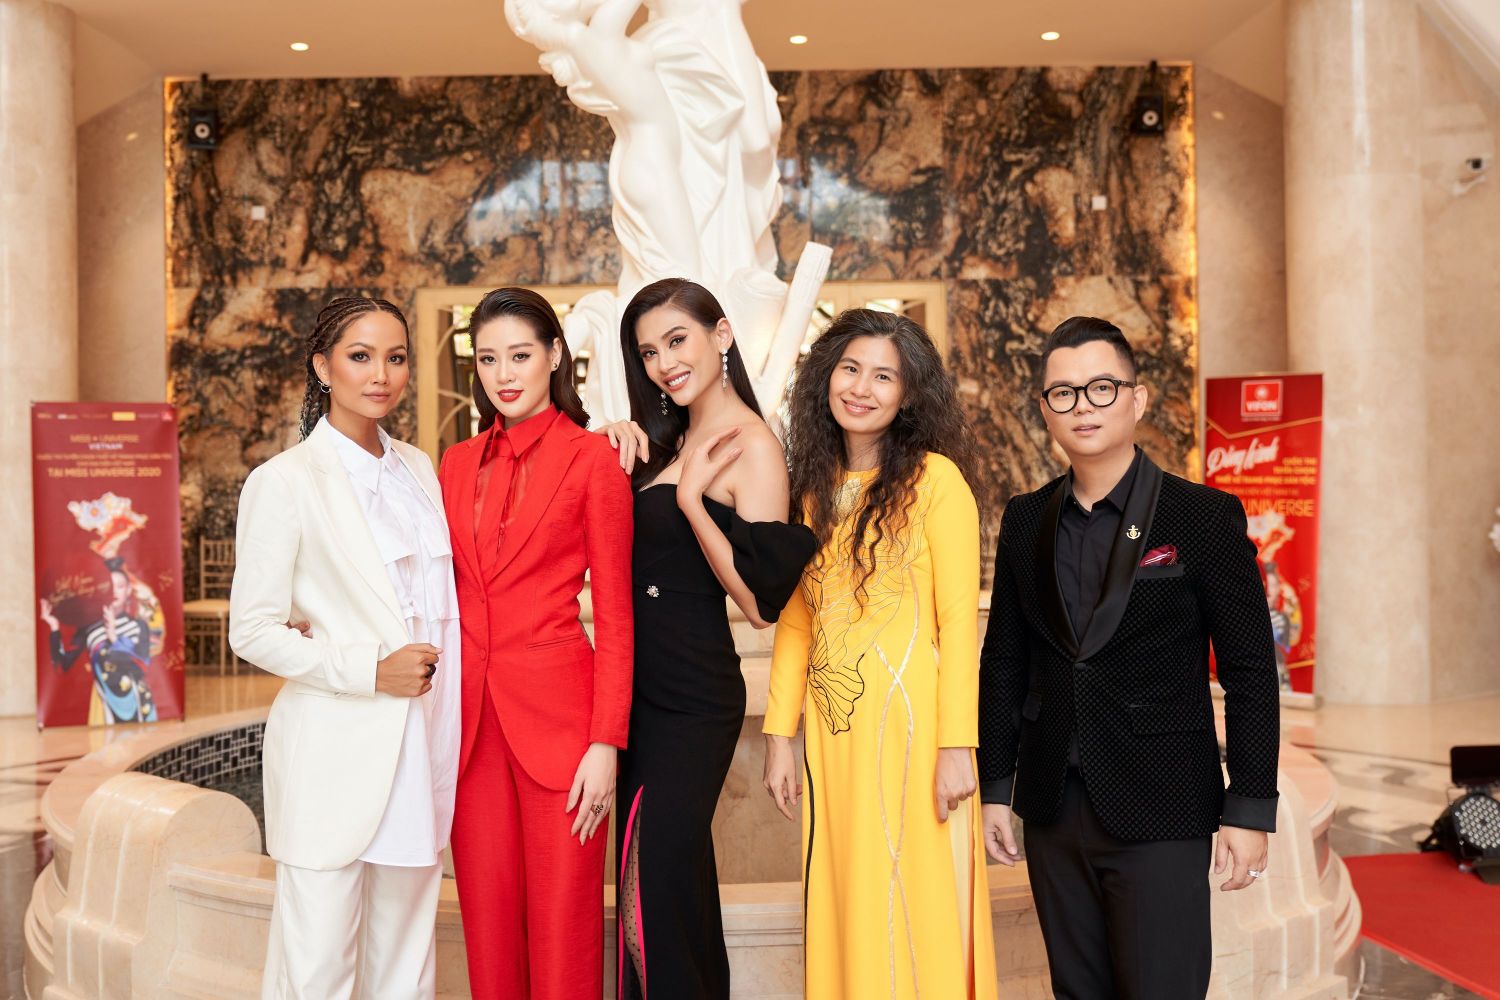 Hoi dong giam khao va Hoa hau Khanh Van1 Tập 2 Road To Miss Universe: Cuộc đối đầu không khoan nhượng của các thiết kế trang phục dân tộc